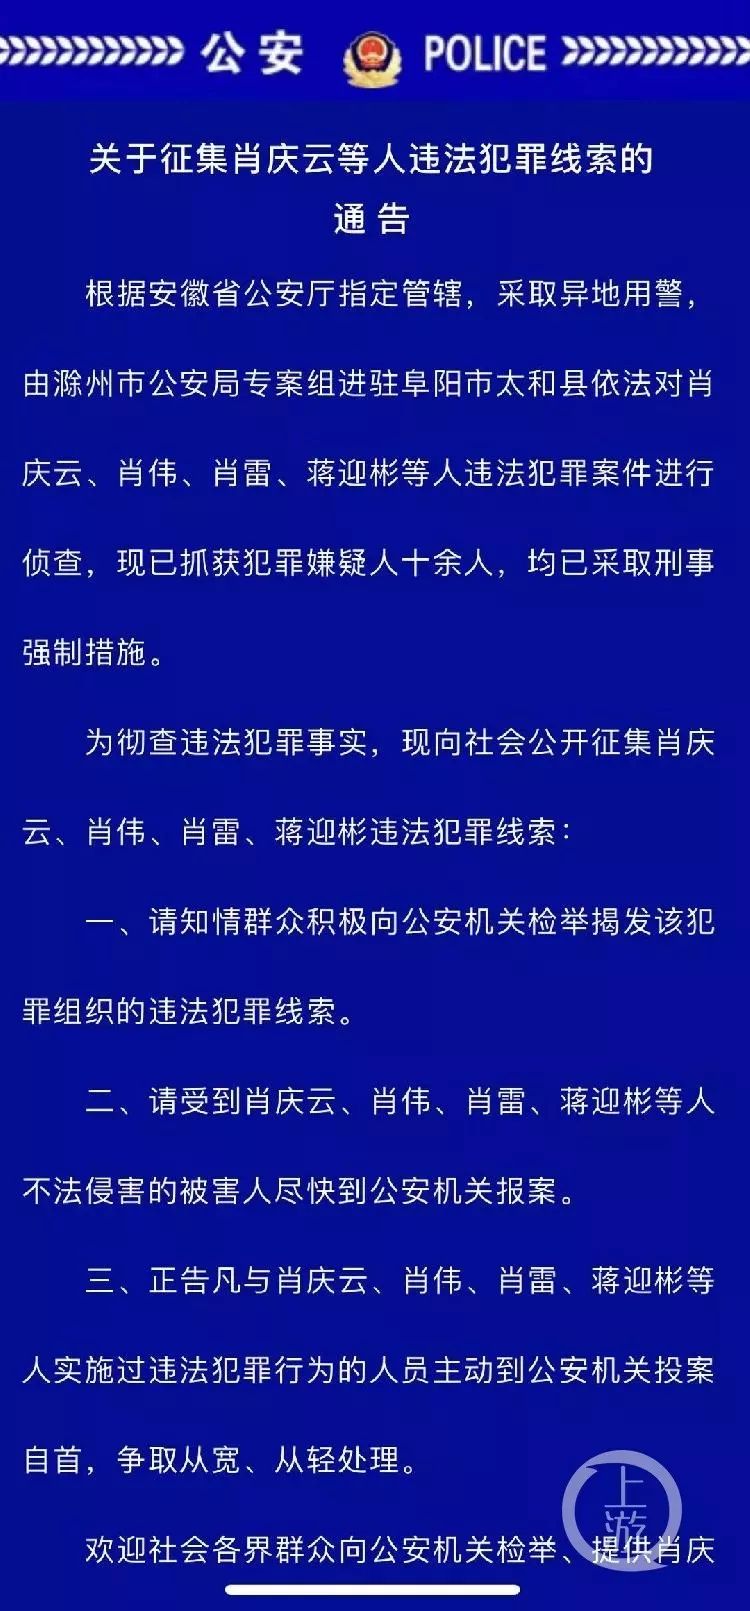 有关媒体注意到,前述太和县原县长肖军涉嫌为涉黑组织充当保护伞